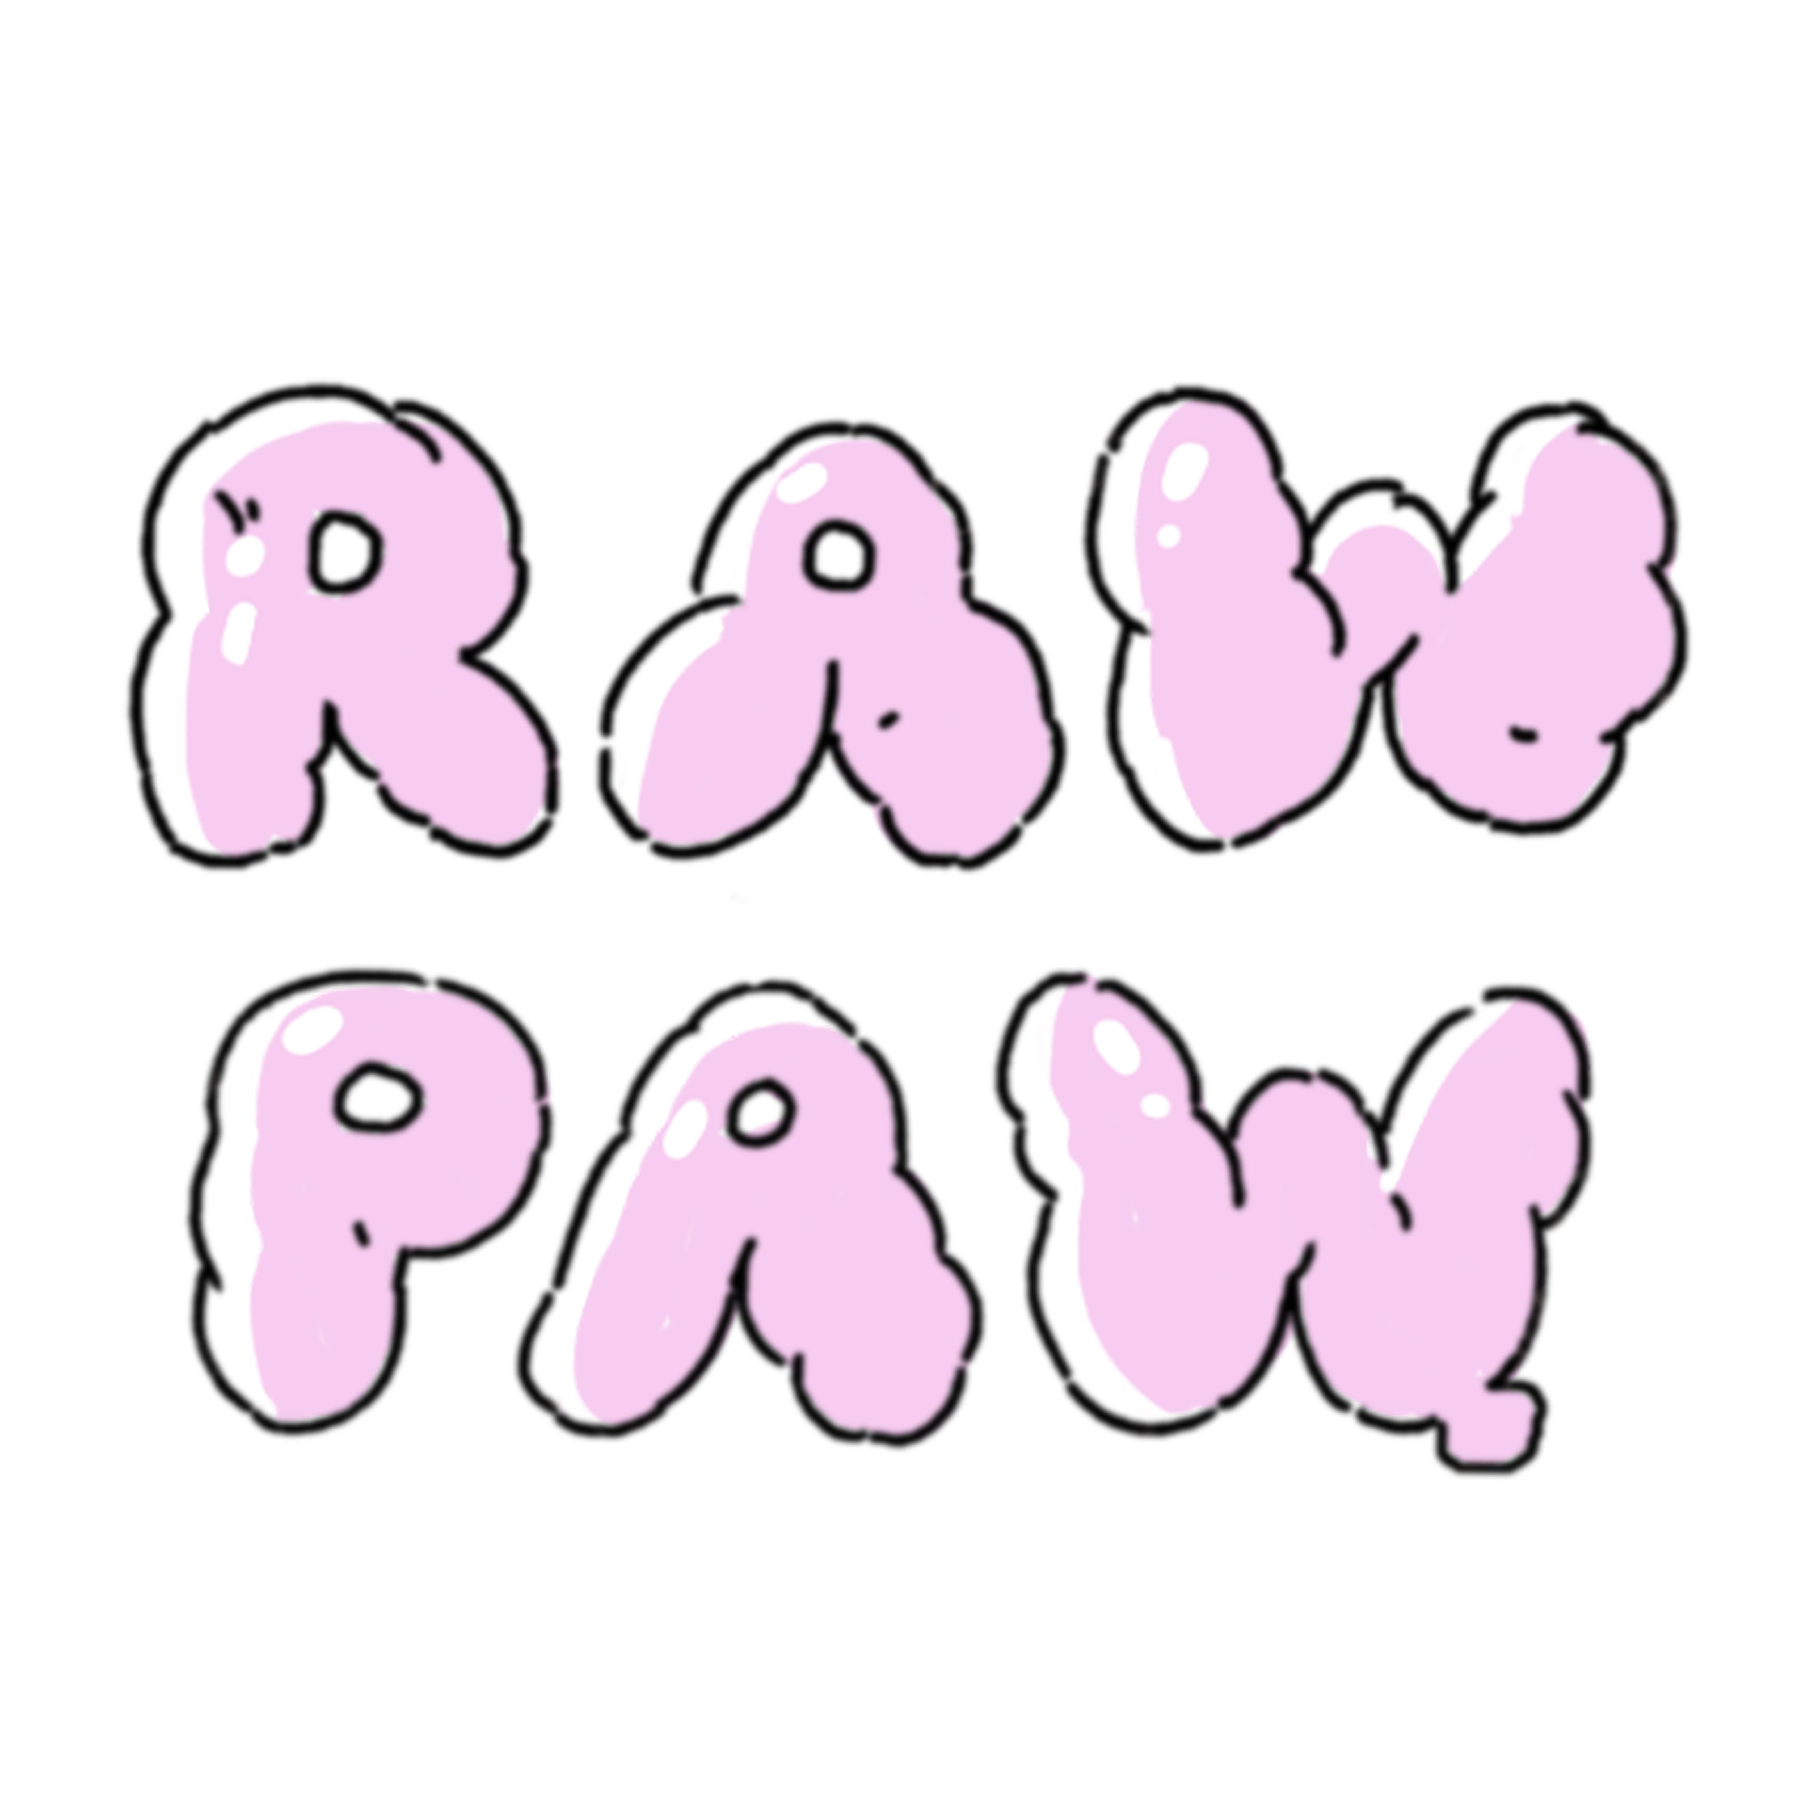 Raw Paw